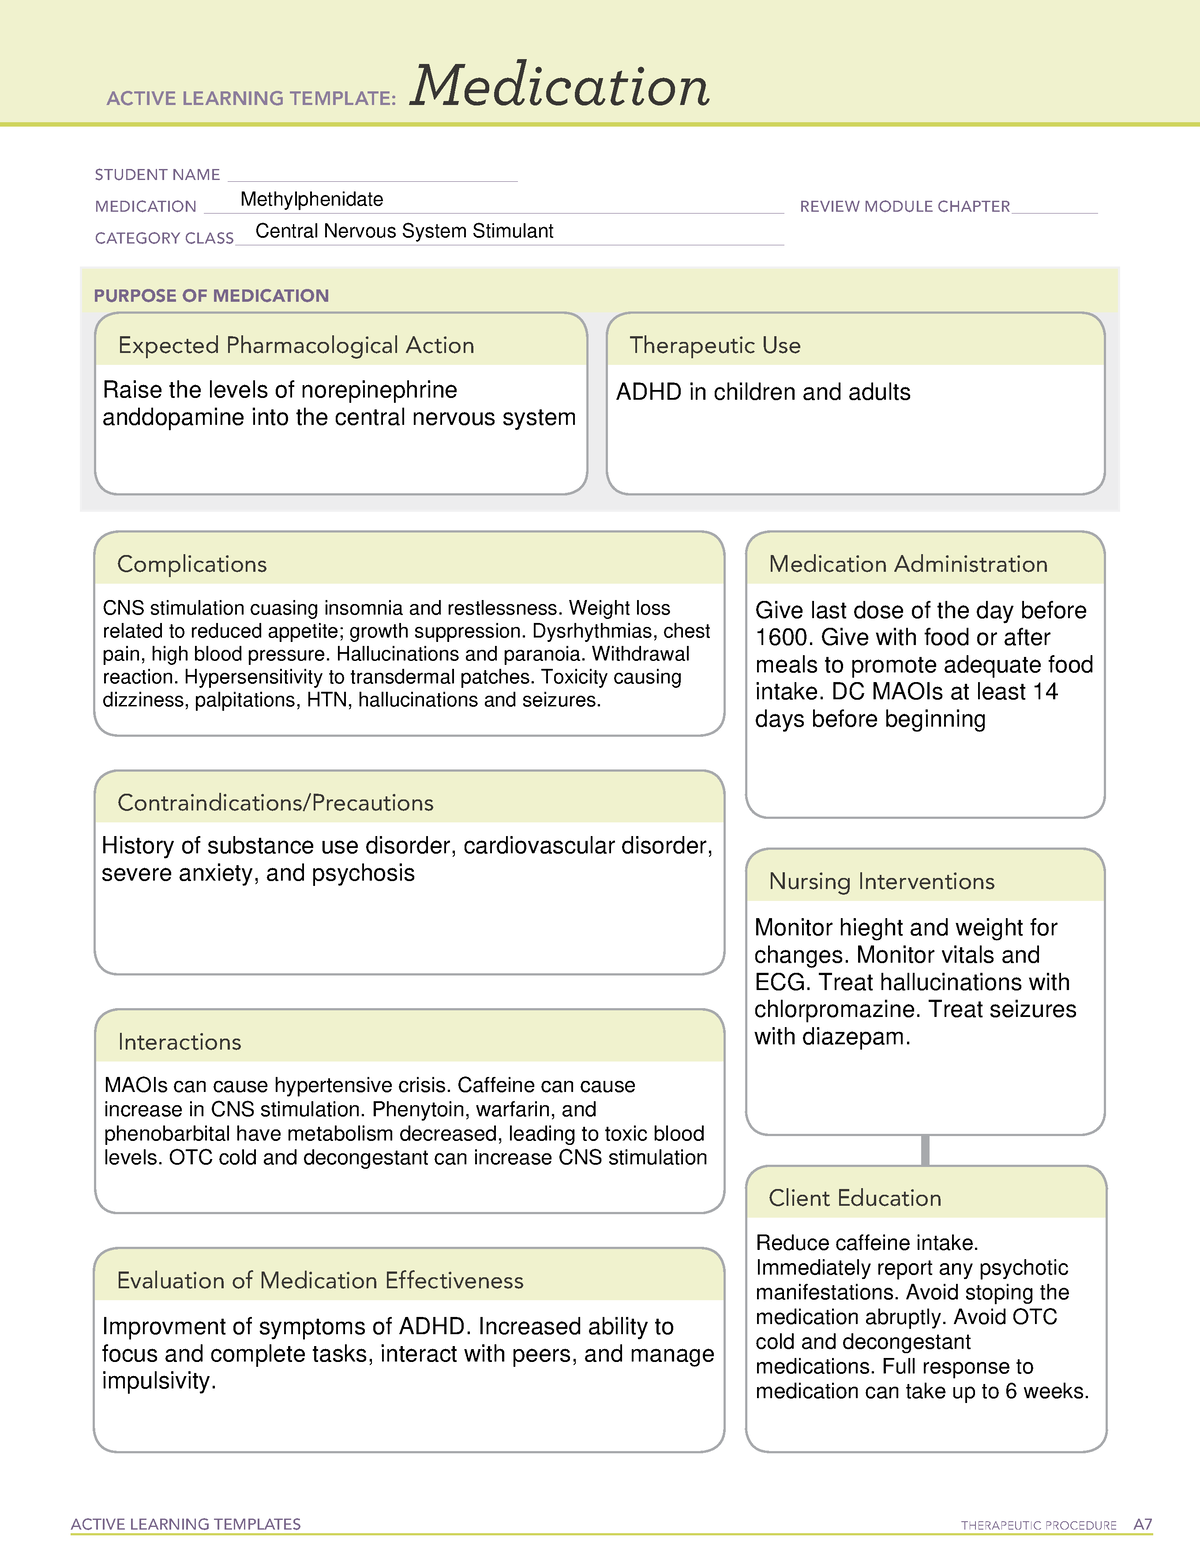 ati-methylphenidate-medication-sheet-active-learning-templates